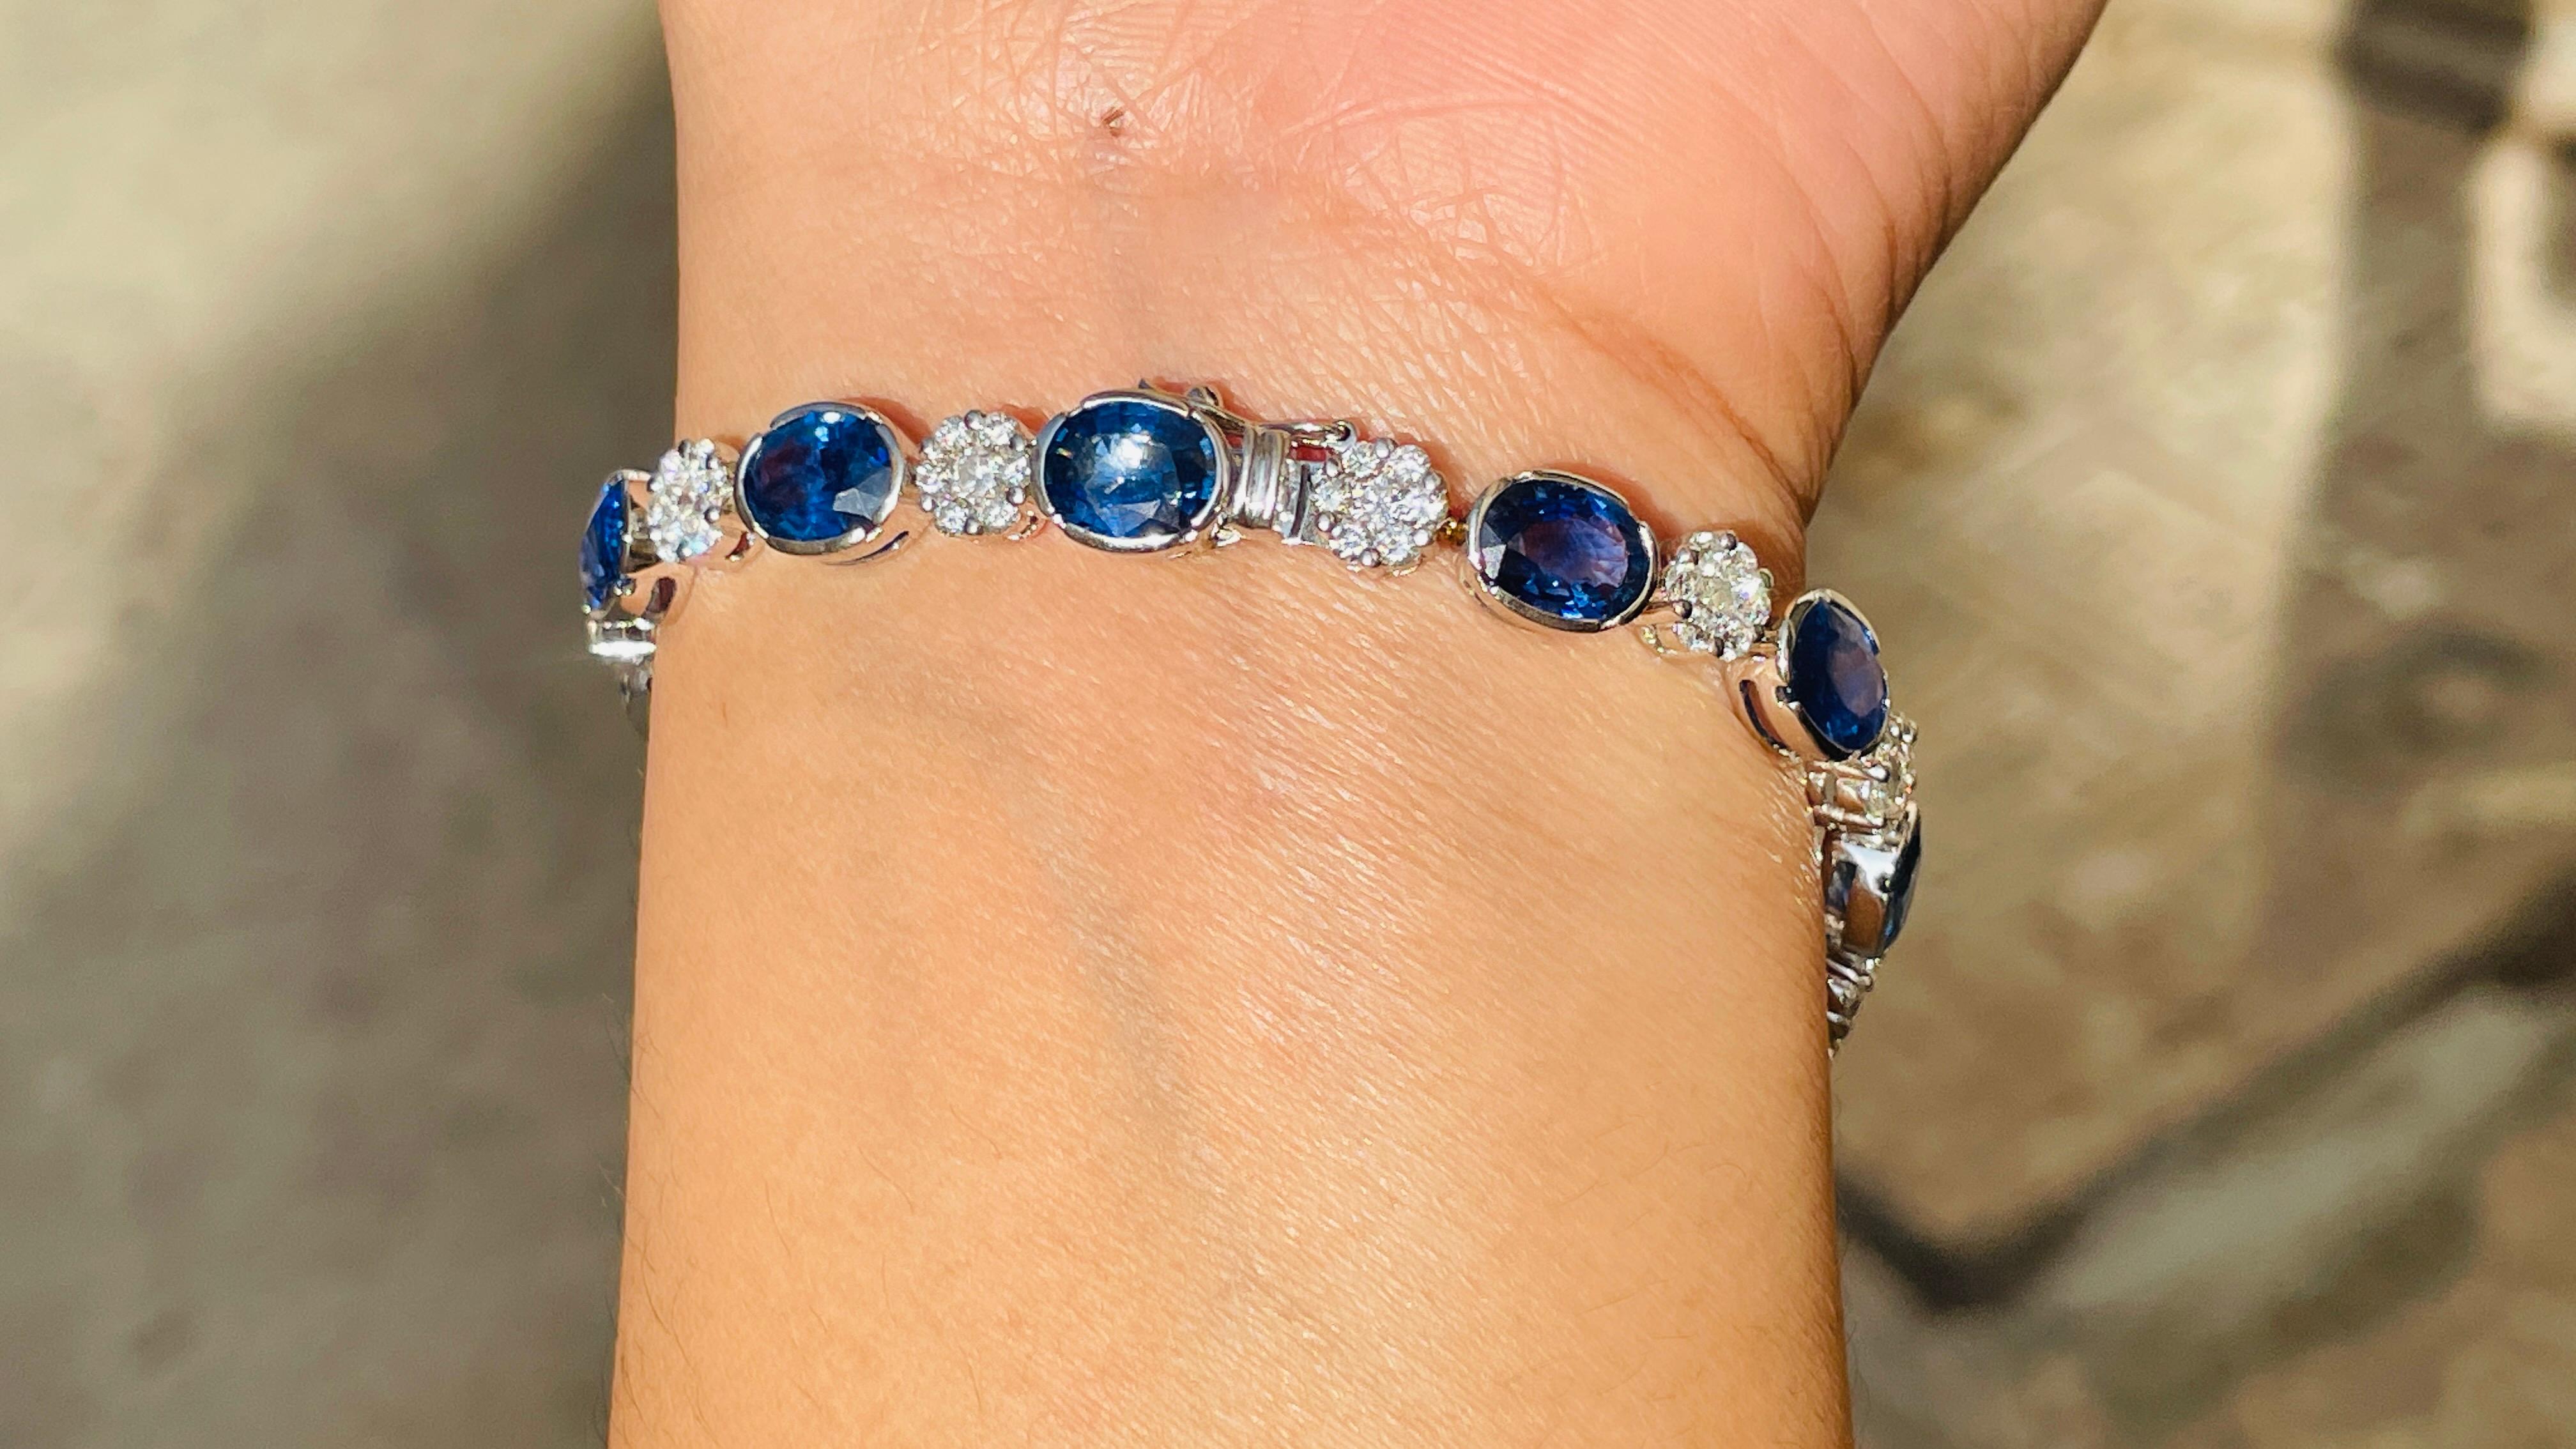 Bracelet en saphir bleu et diamant en or 18 carats. Il possède une pierre précieuse de taille ovale parfaite qui vous permettra de vous démarquer en toute occasion ou lors d'un événement.
Un bracelet de tennis est un bijou essentiel le jour de votre